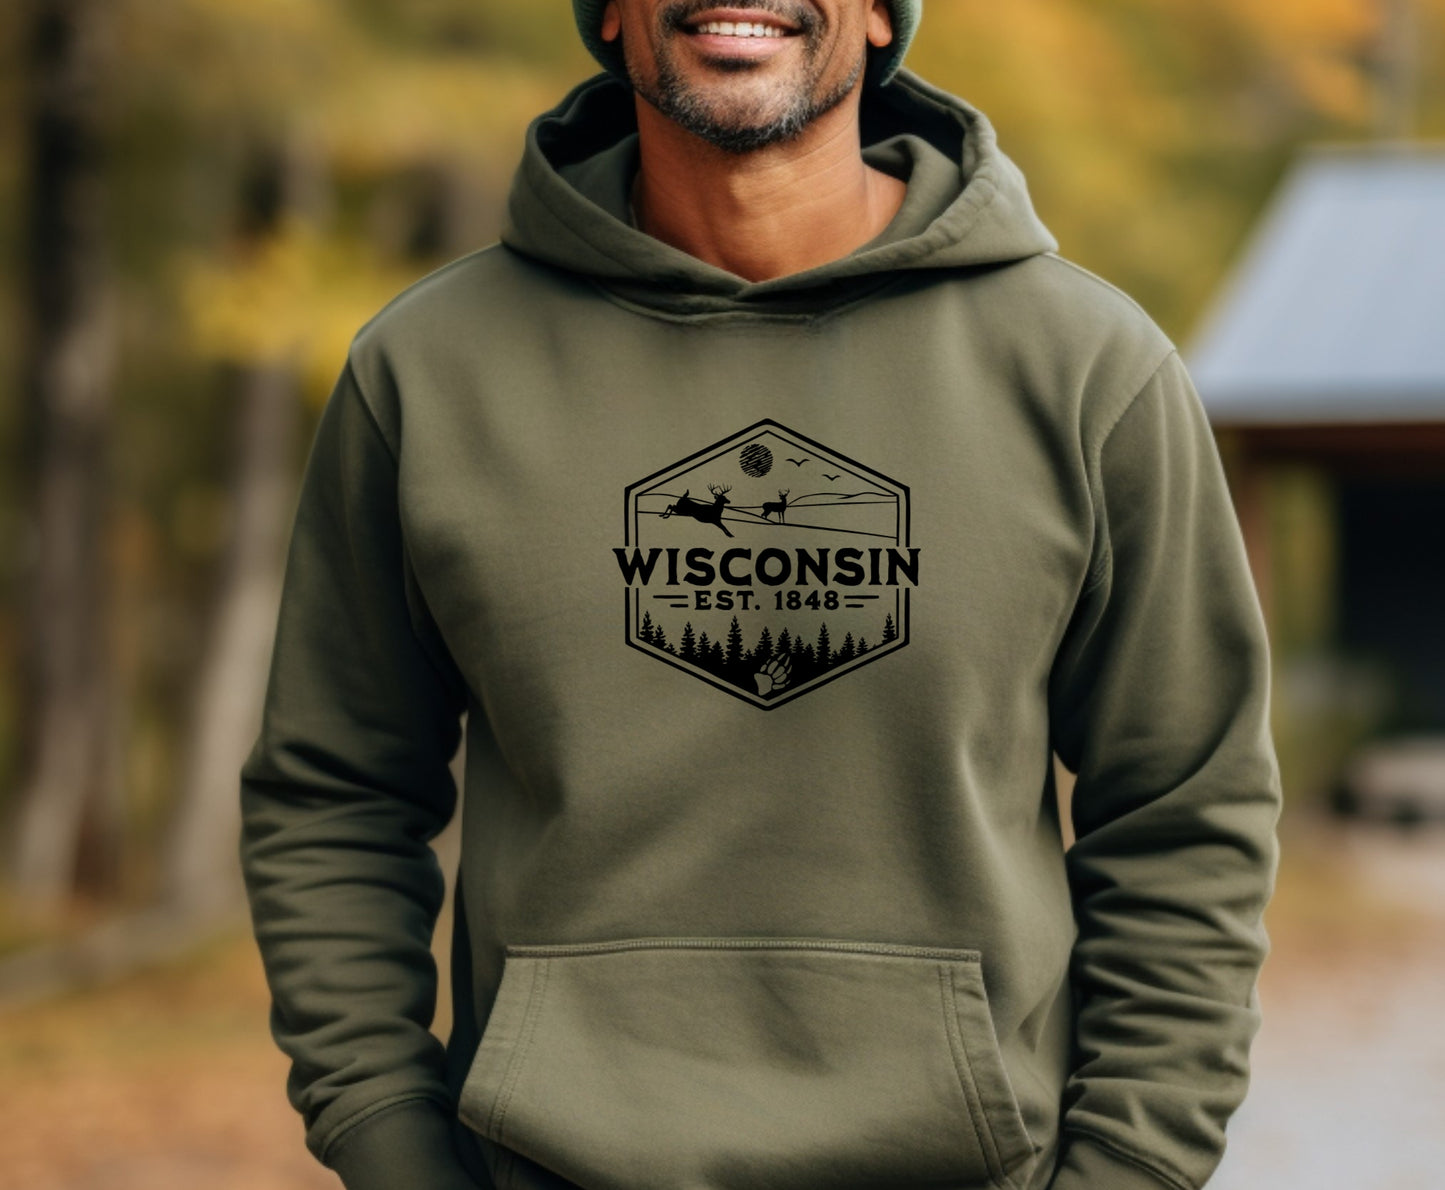 Wisconsin 1848 Men's Hoodie